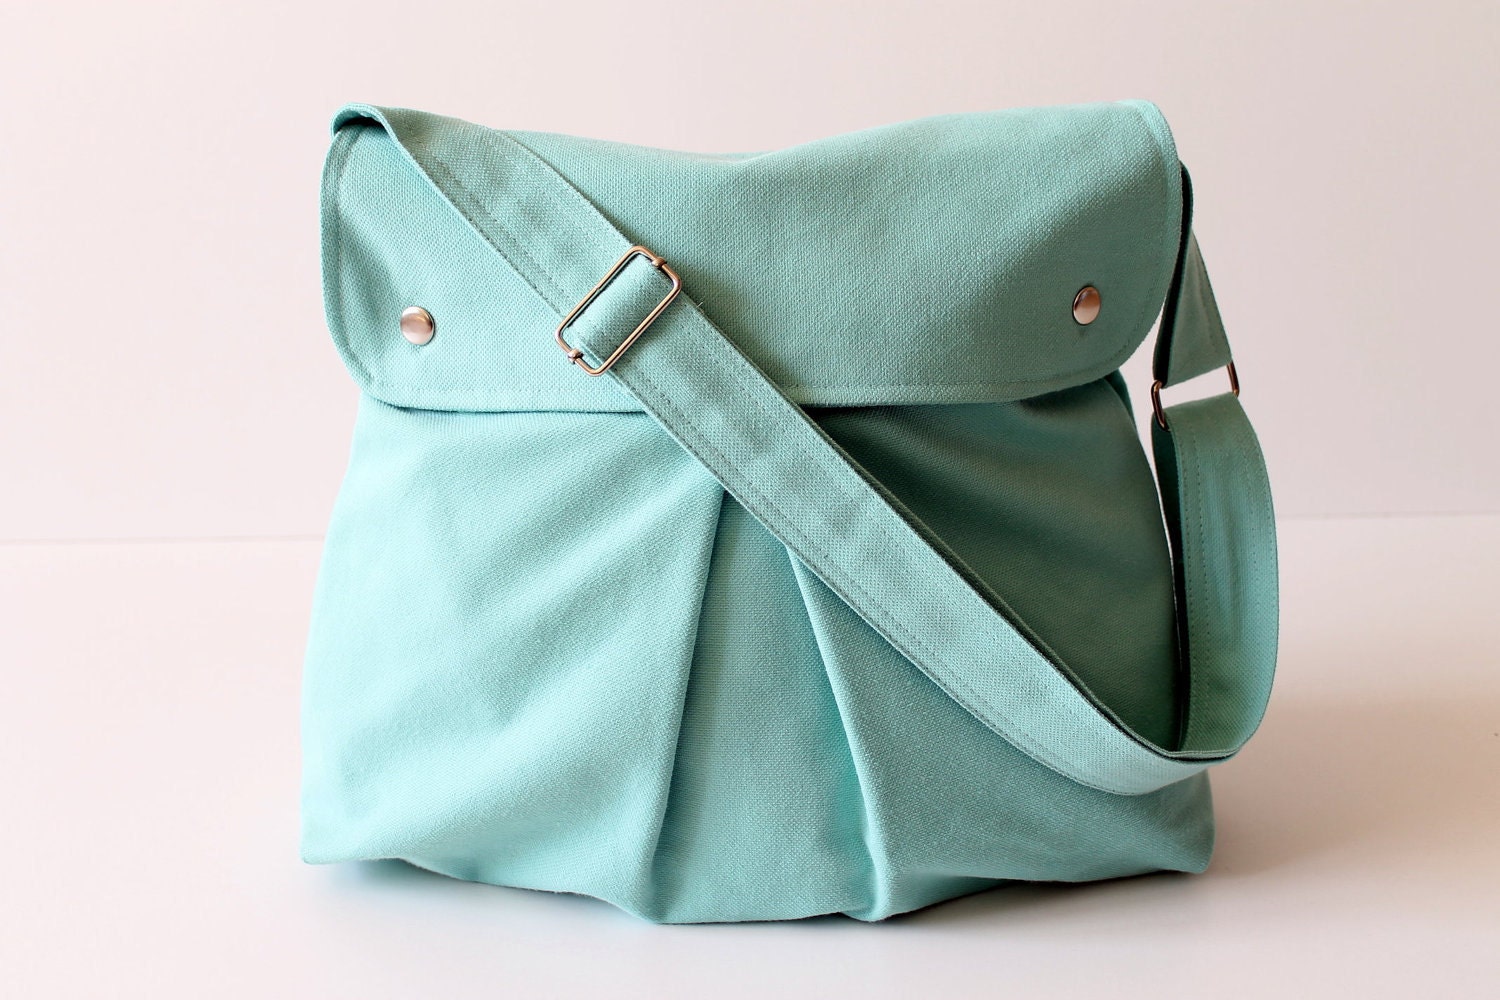 Modular Messenger Bag in Aqua Blue / Shoulder Bag / Laptop Bag / Diaper Bag / Travel Bag / Pleated Bag with flap and adjustable strap